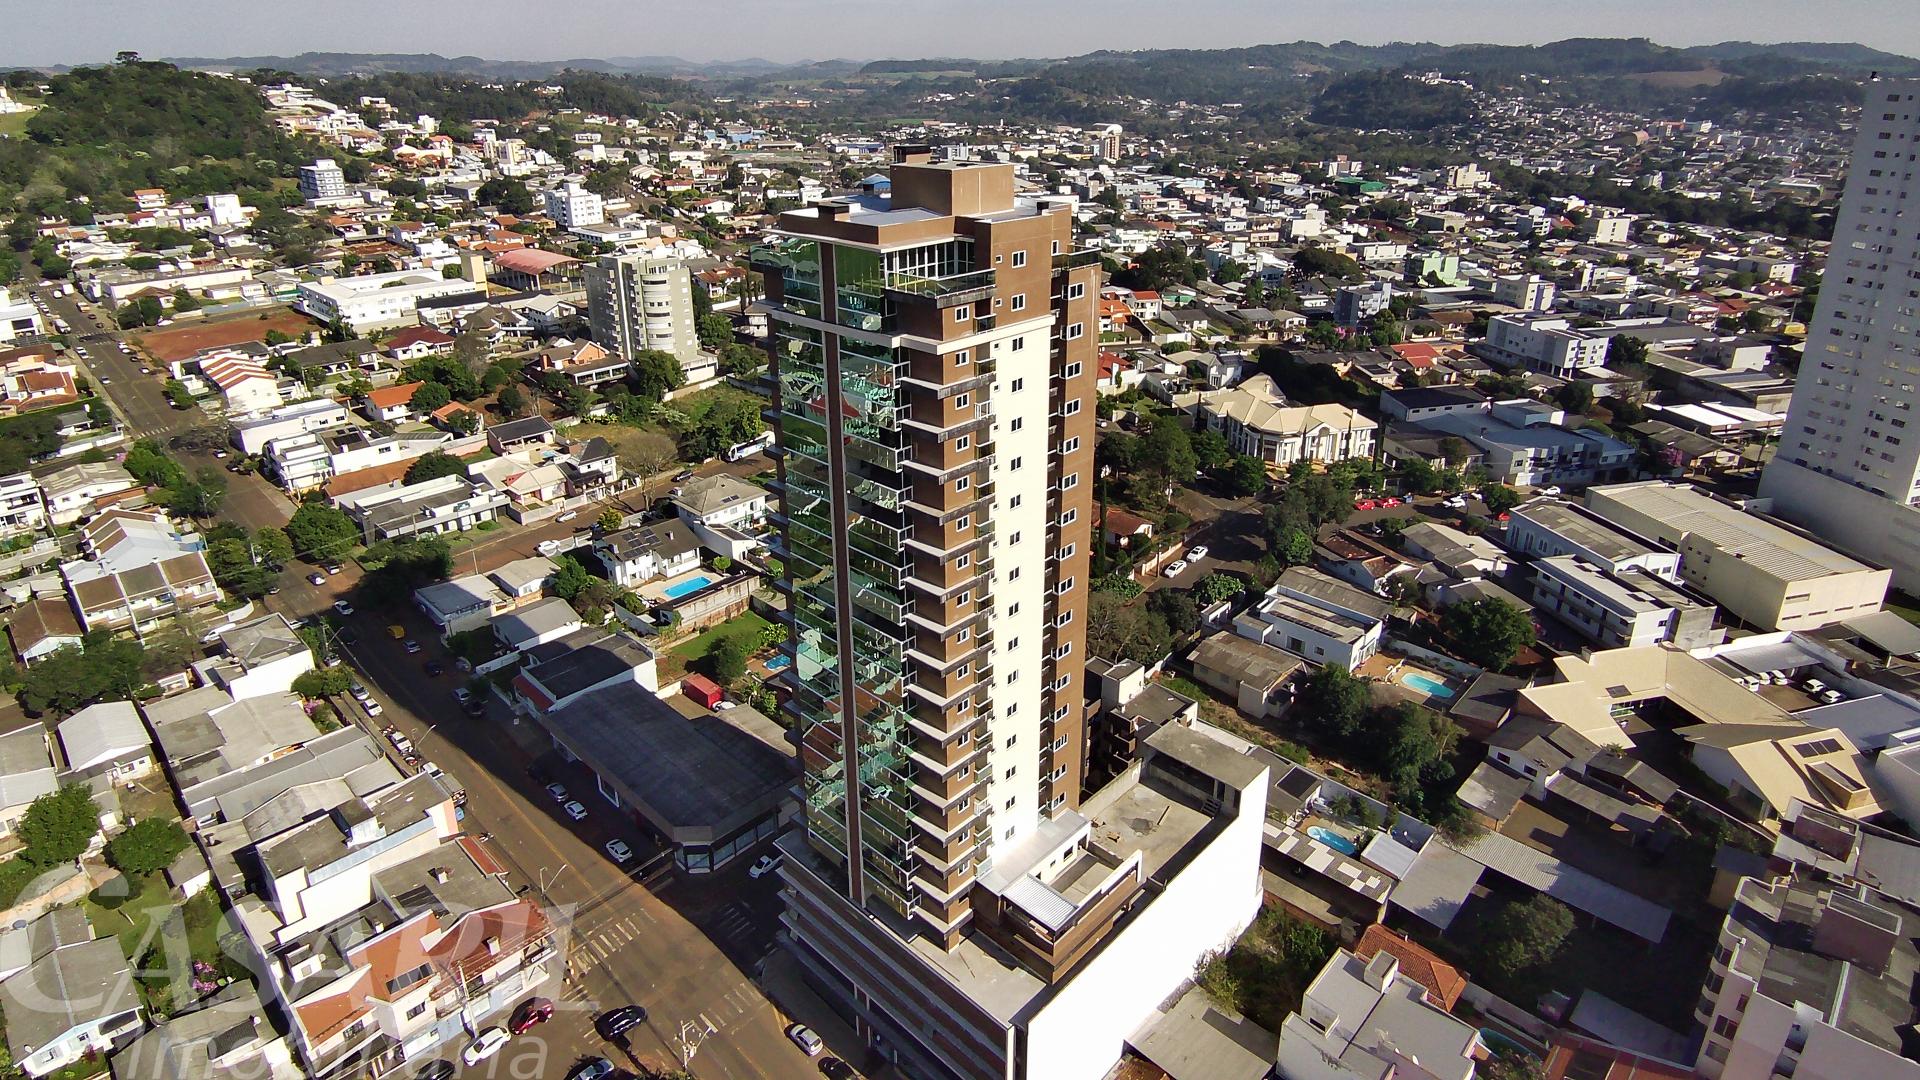 Investimento  Apartamento À Venda No Centro De Francisco Beltrão - Pr